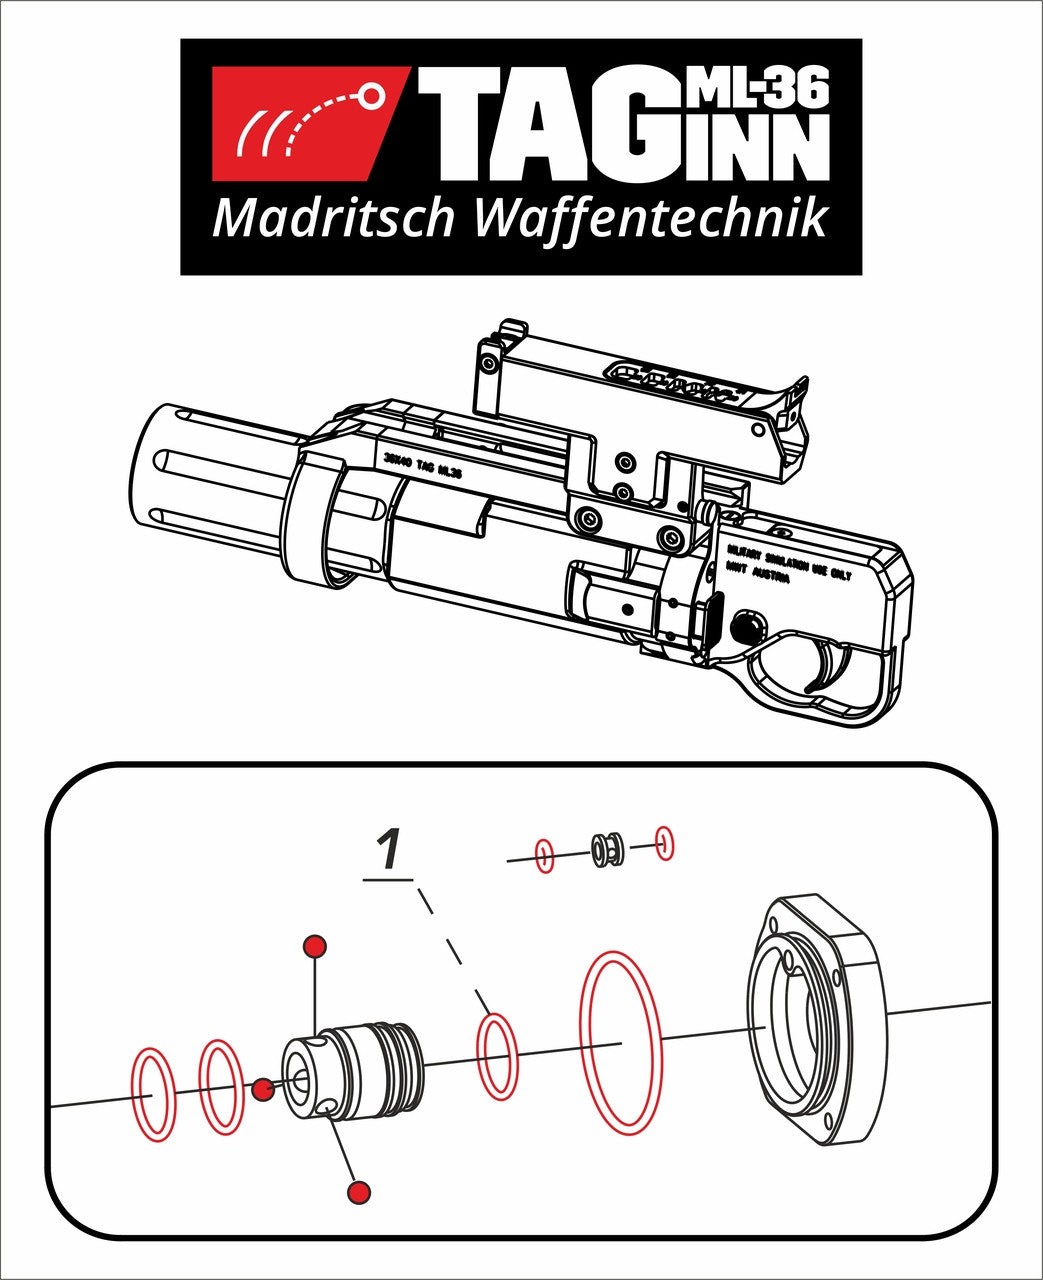 Kit de reparación de juntas tóricas TAGINN para el sistema de lanzador independiente "TAG-ML36"